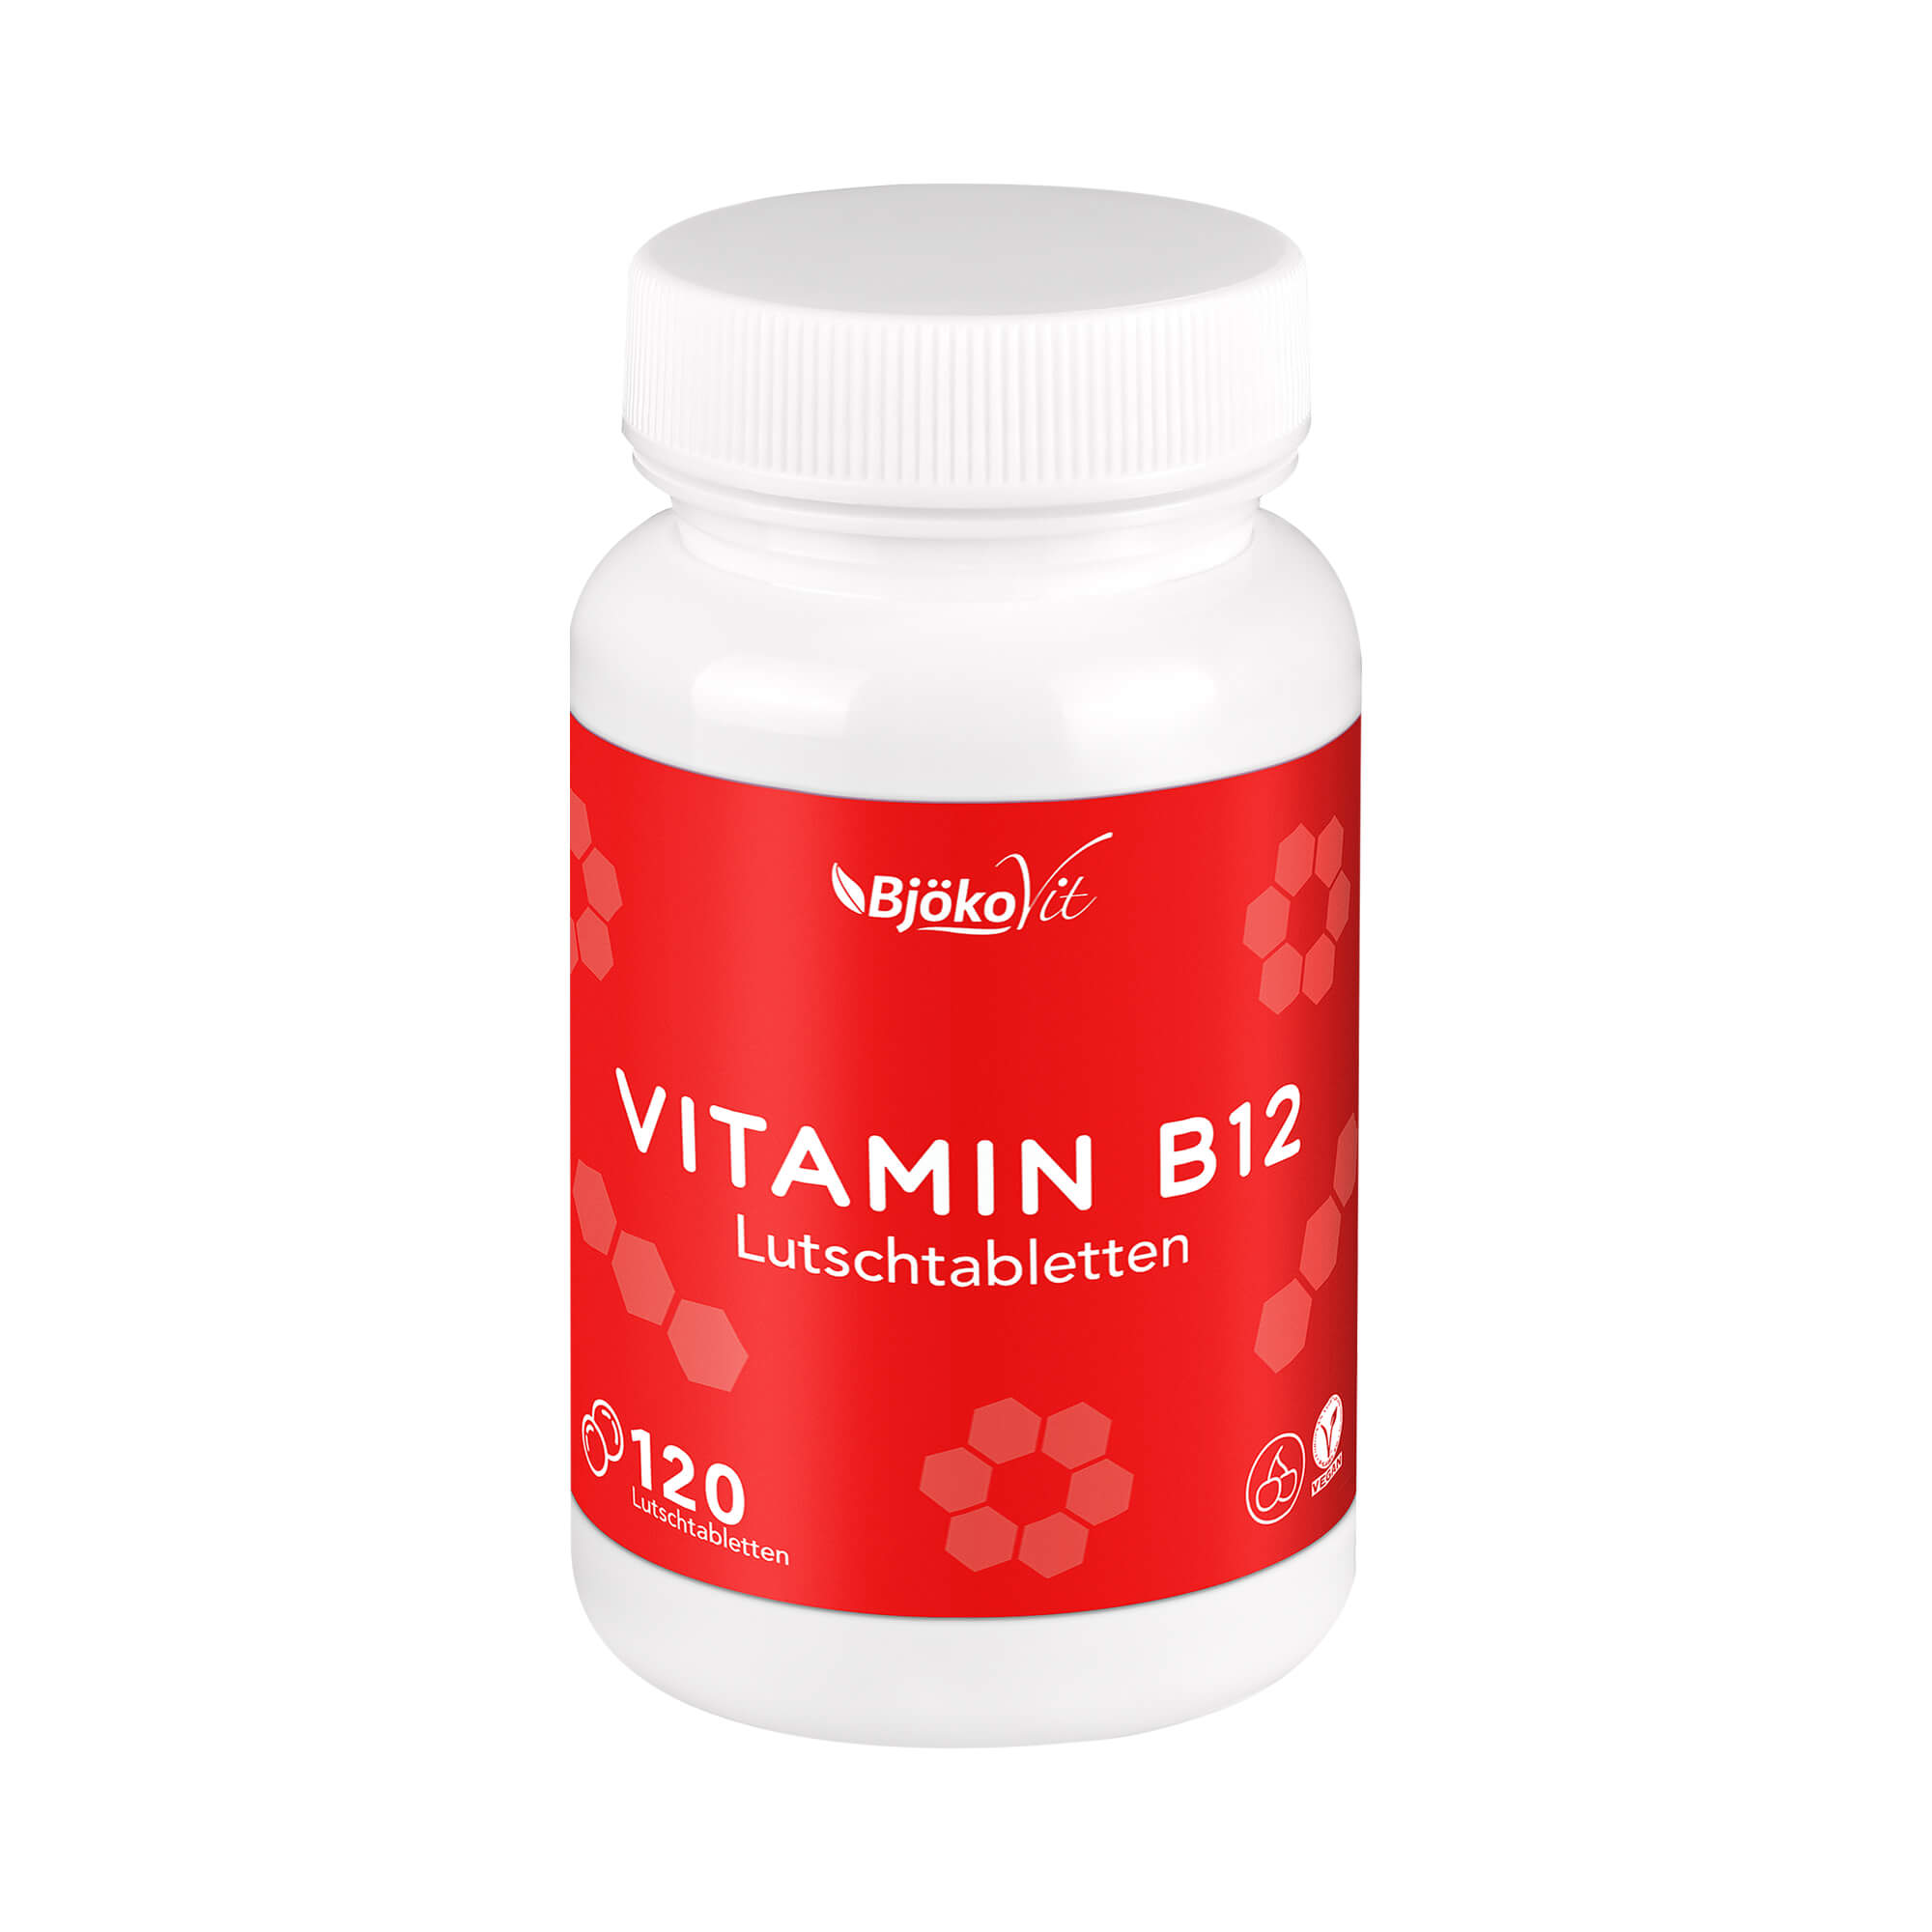 Nahrungsergänzungsmittel mit Vitamin B12. Vegane Lutschtabletten.